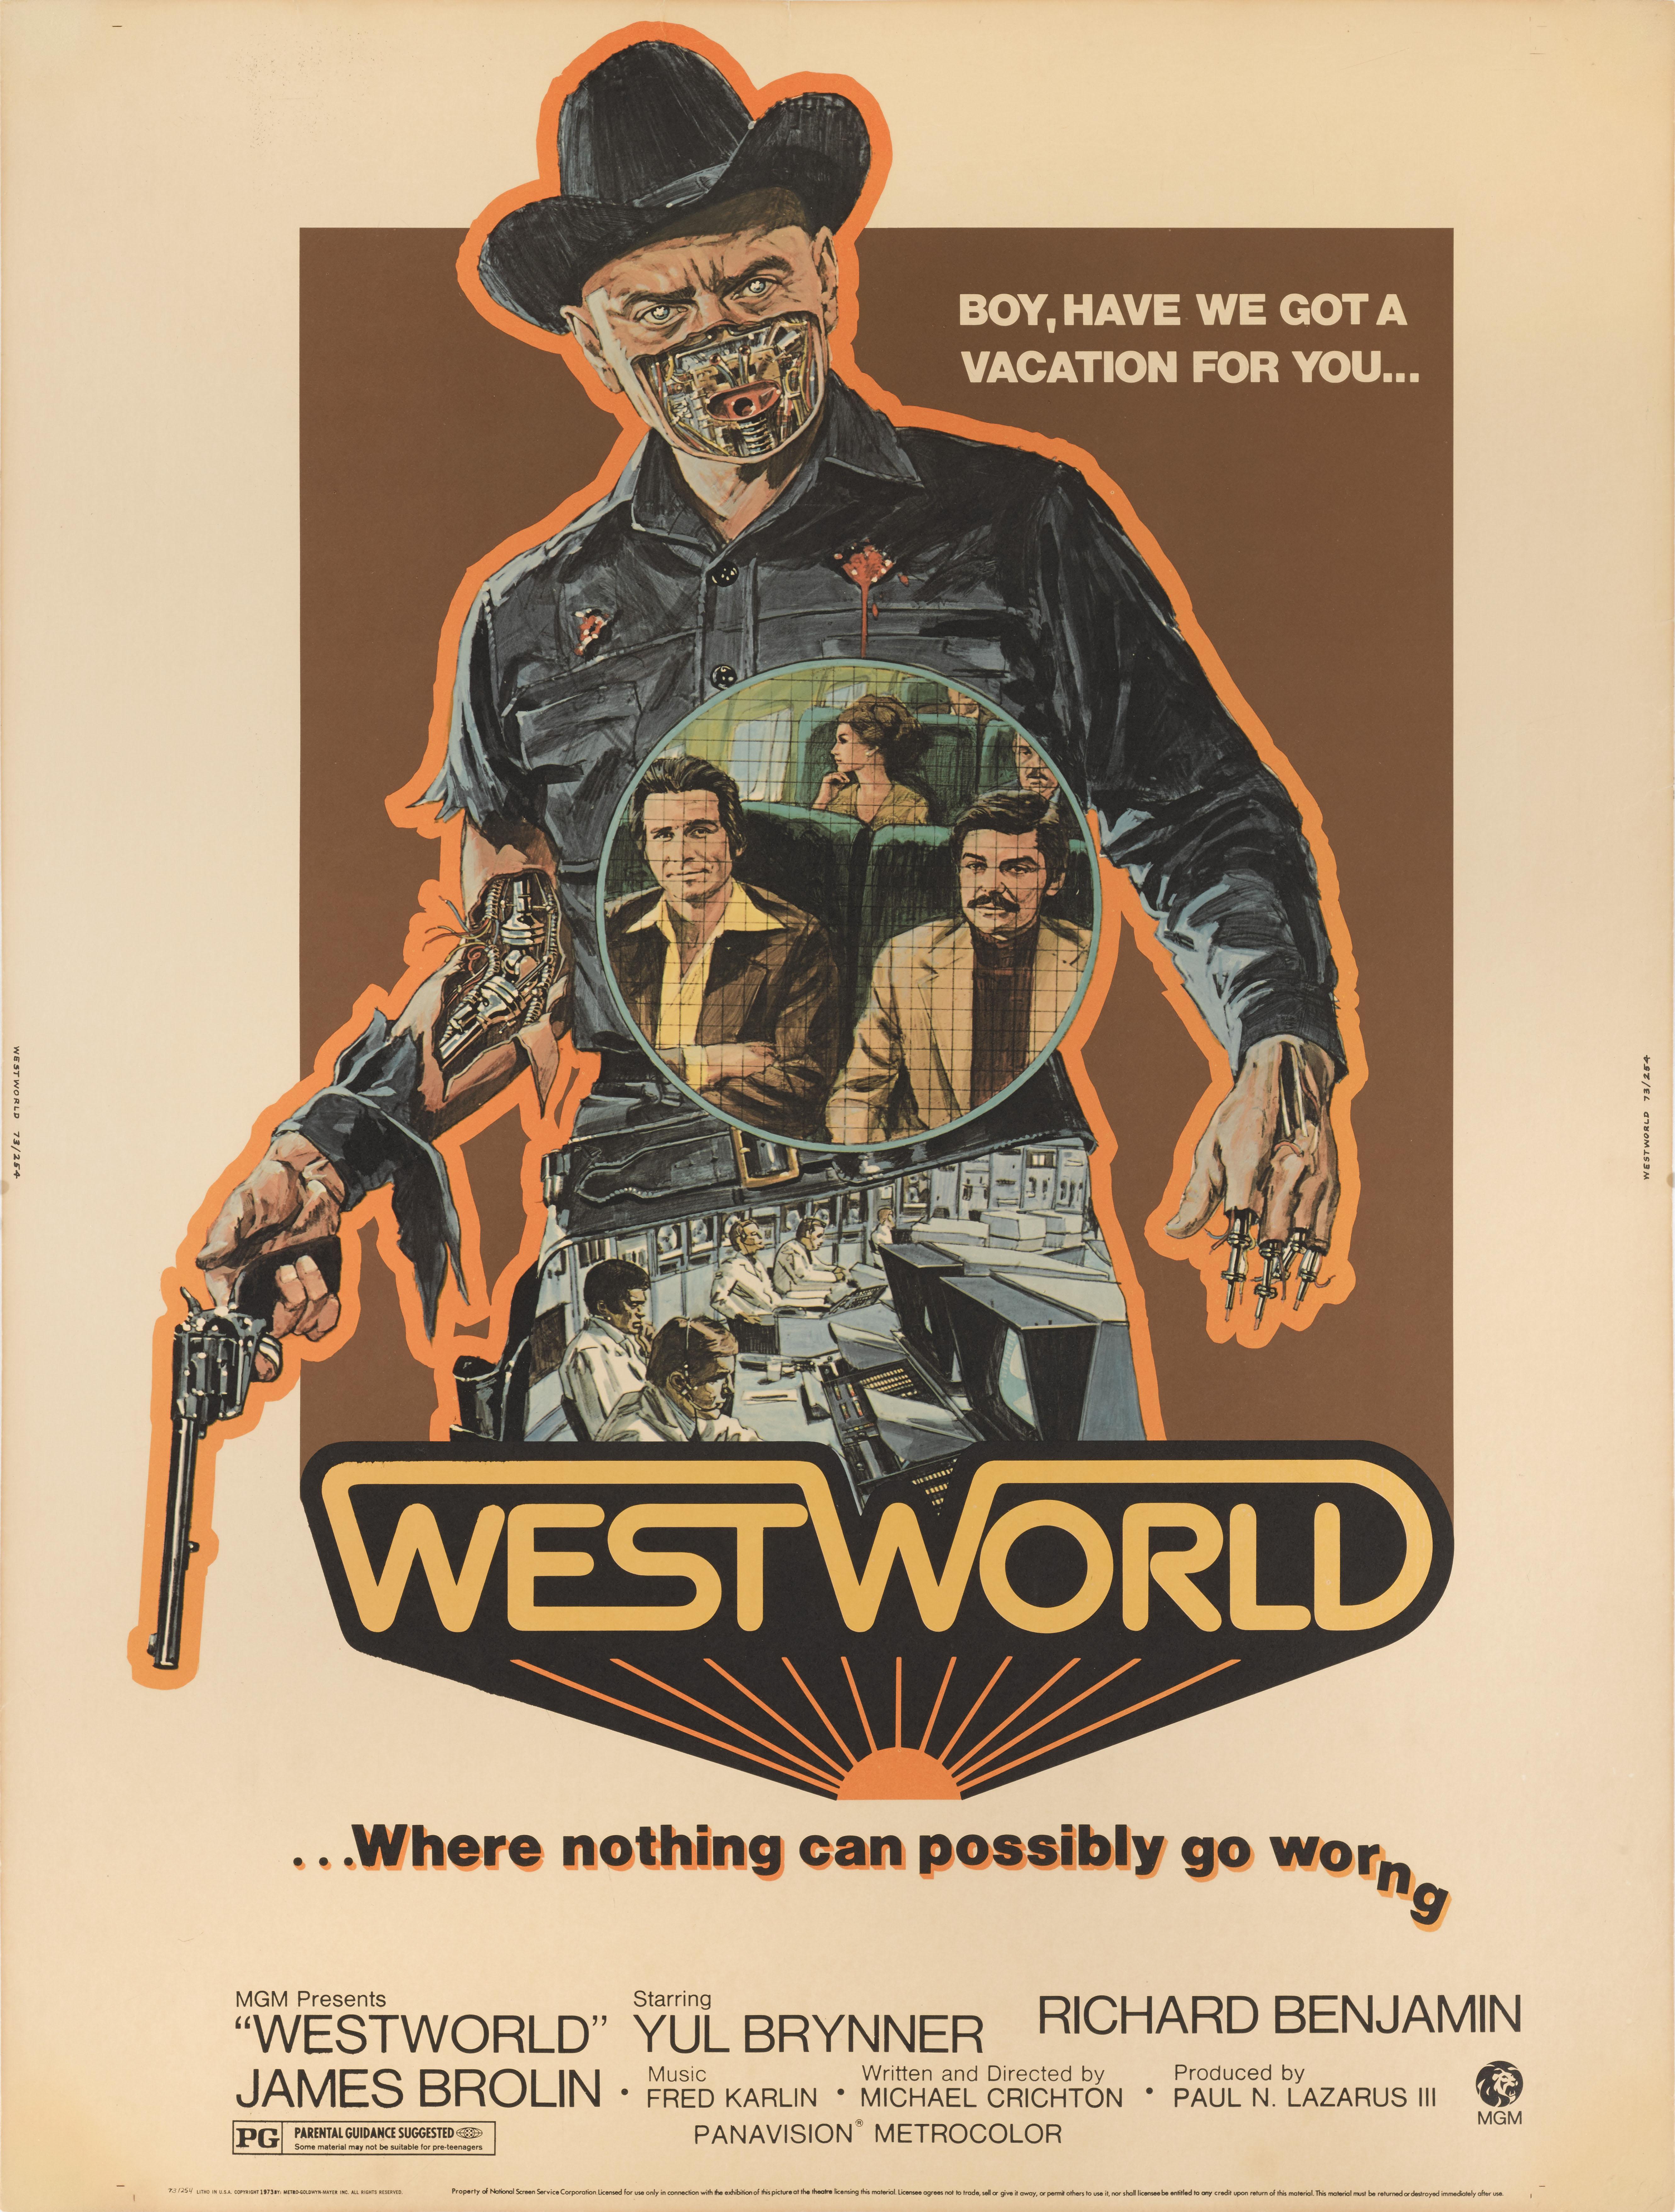 Affiche originale du film américain The  film culte de science-fiction Westworld 1973.
Ce film met en scène Yul Brynner, Richard Benjamin et James Brolin. Ce film a été réalisé par Michael Crichton.
Cette affiche est dépliée et protégée par une